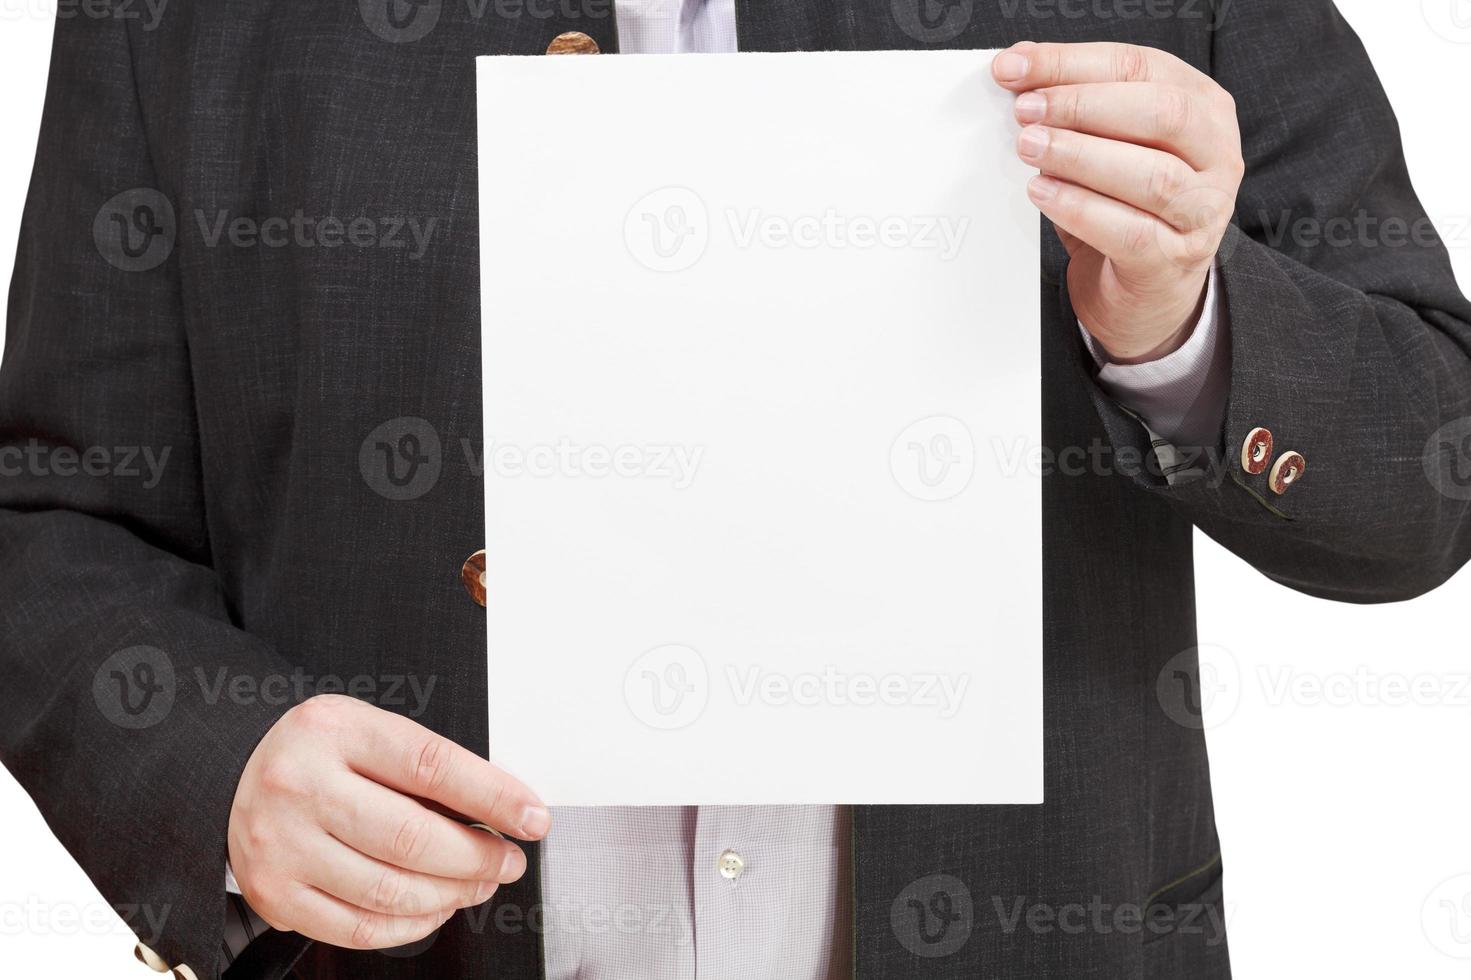 allenatore detiene vuoto foglio di carta nel mani foto